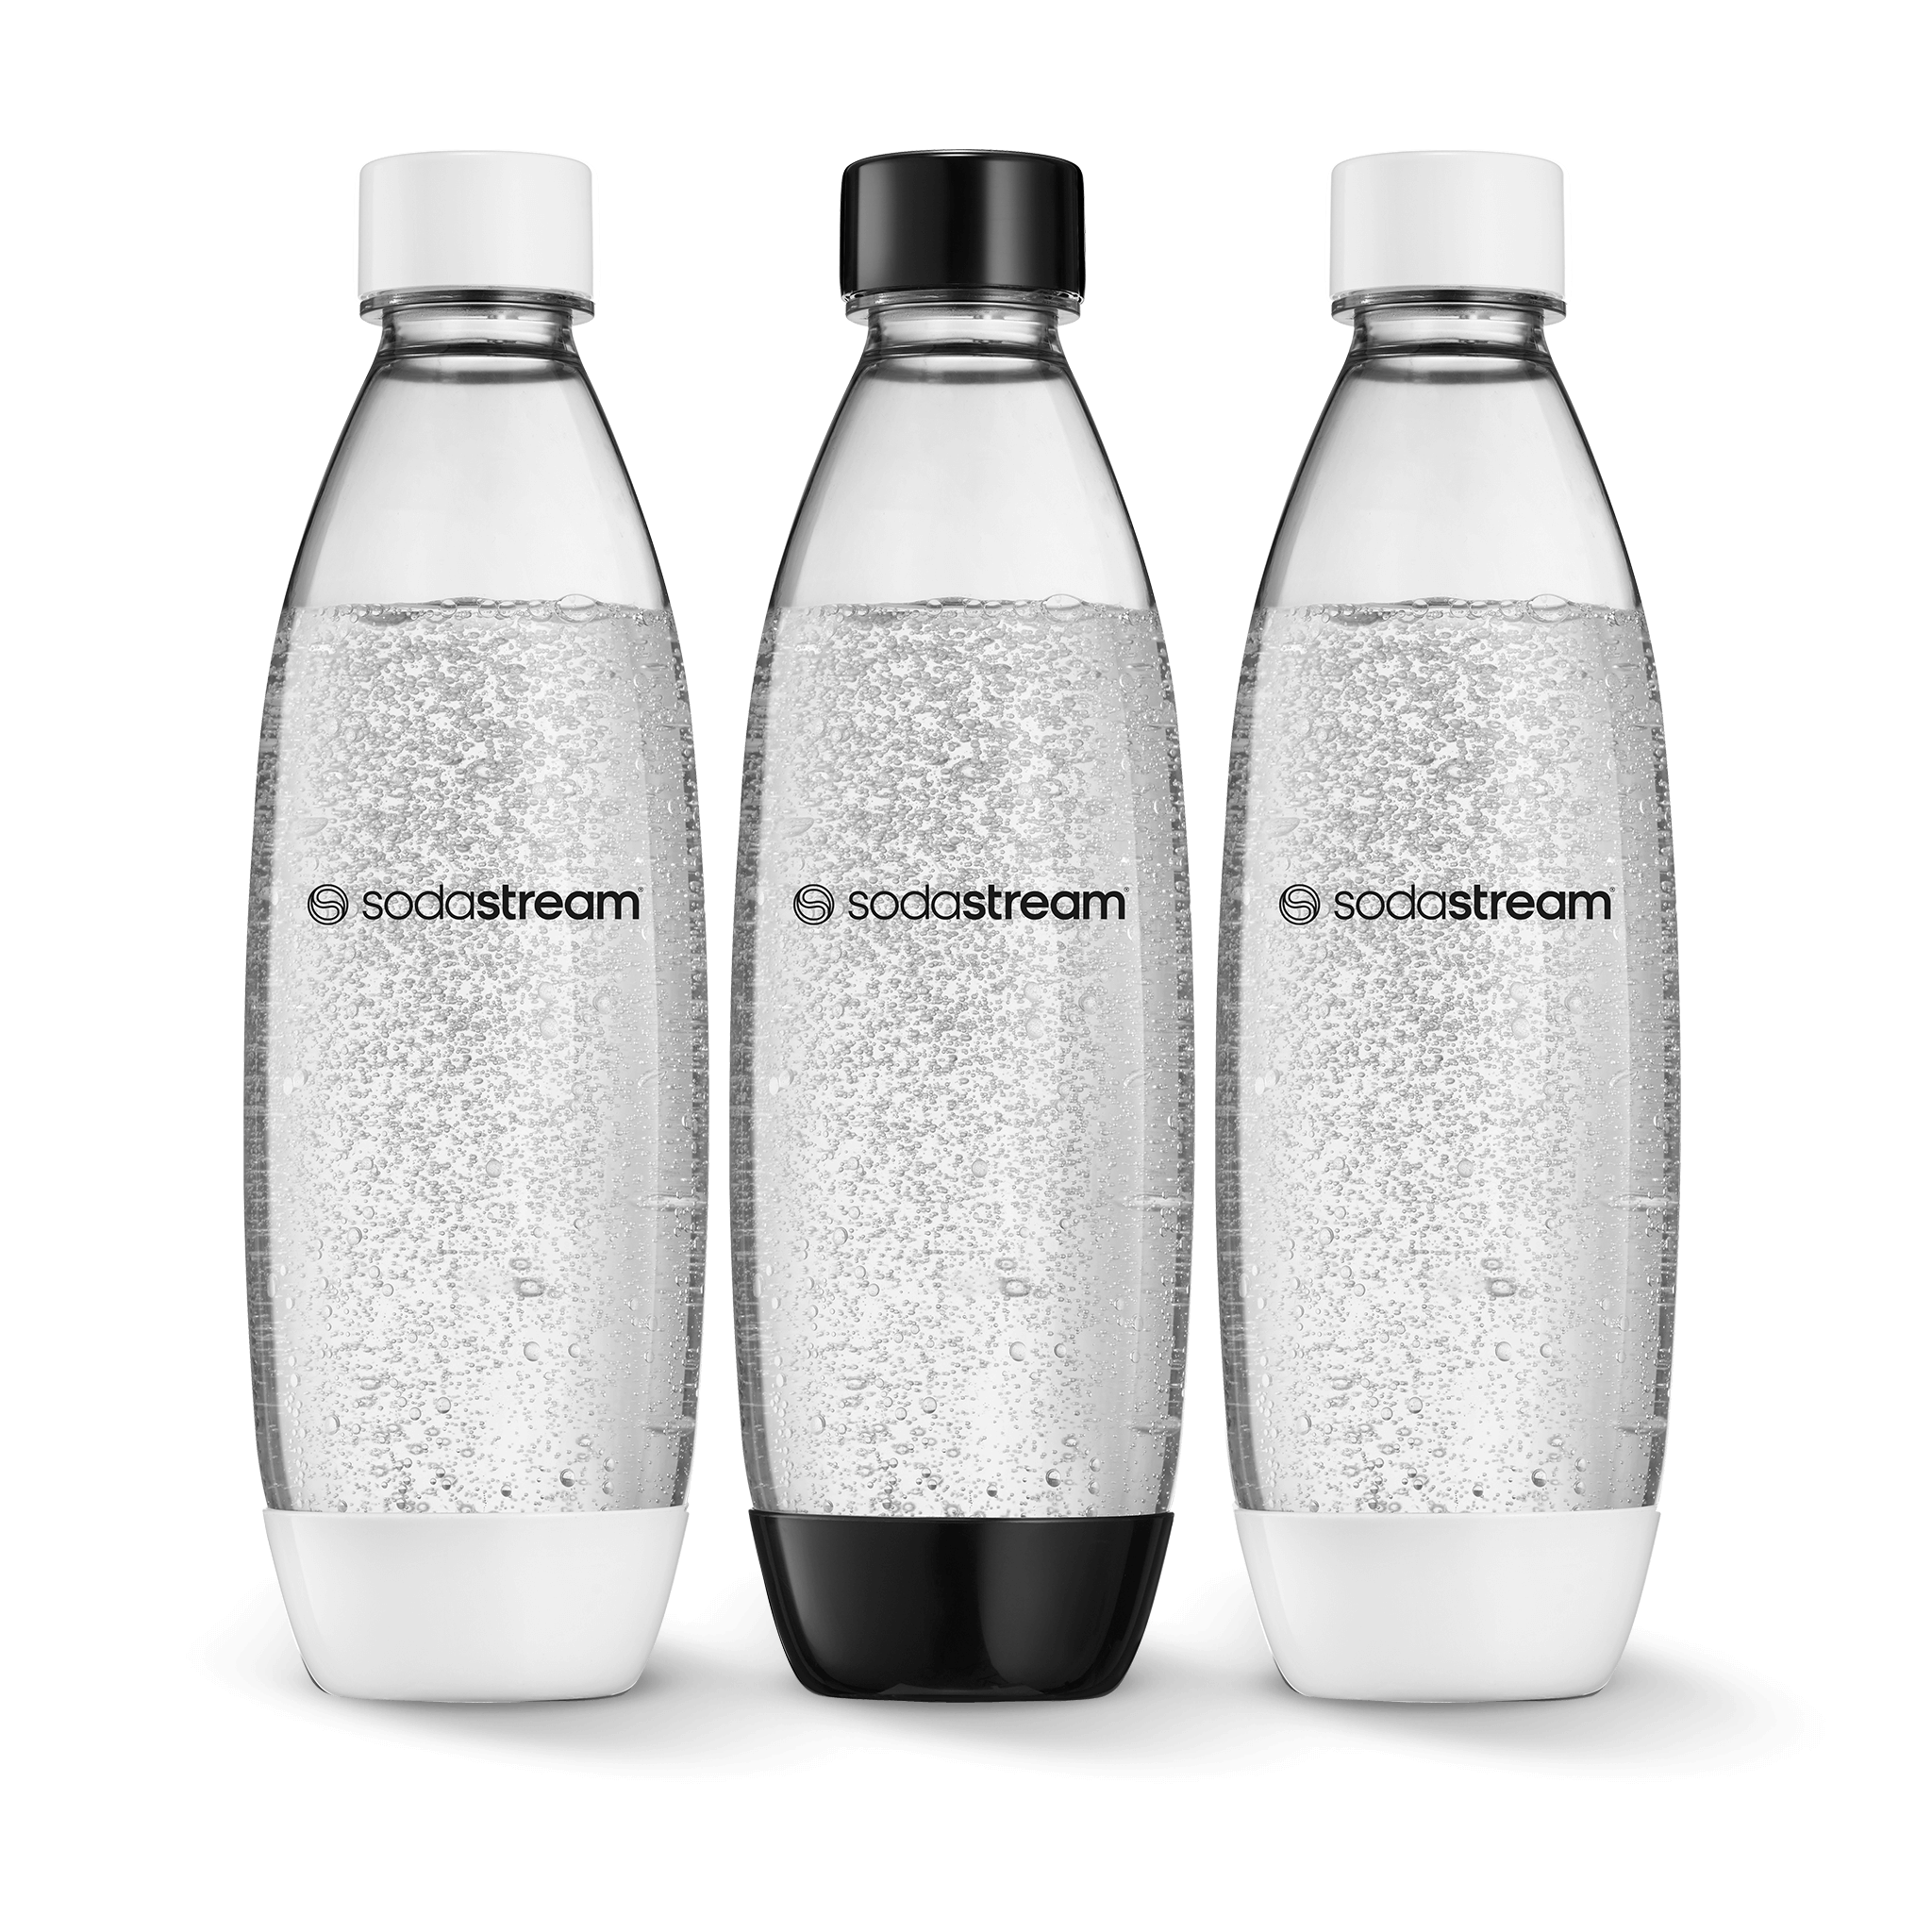 שלישיית בקבוקי פלסטיק בצבע שחור-לבן בנפח 1 ליטר*